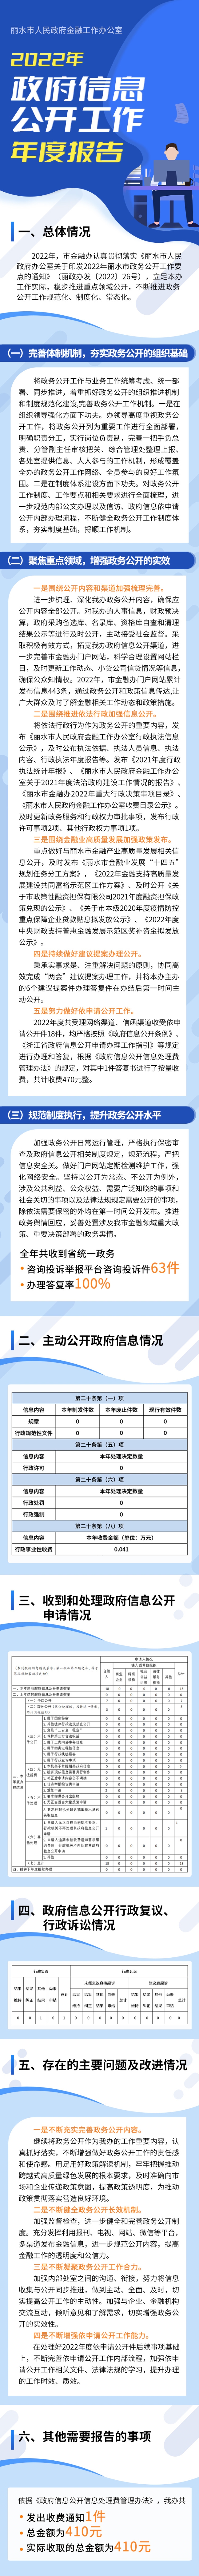 长图--丽水市人民政府金融工作办公室2022年政府信息公开工作年度报告.JPG